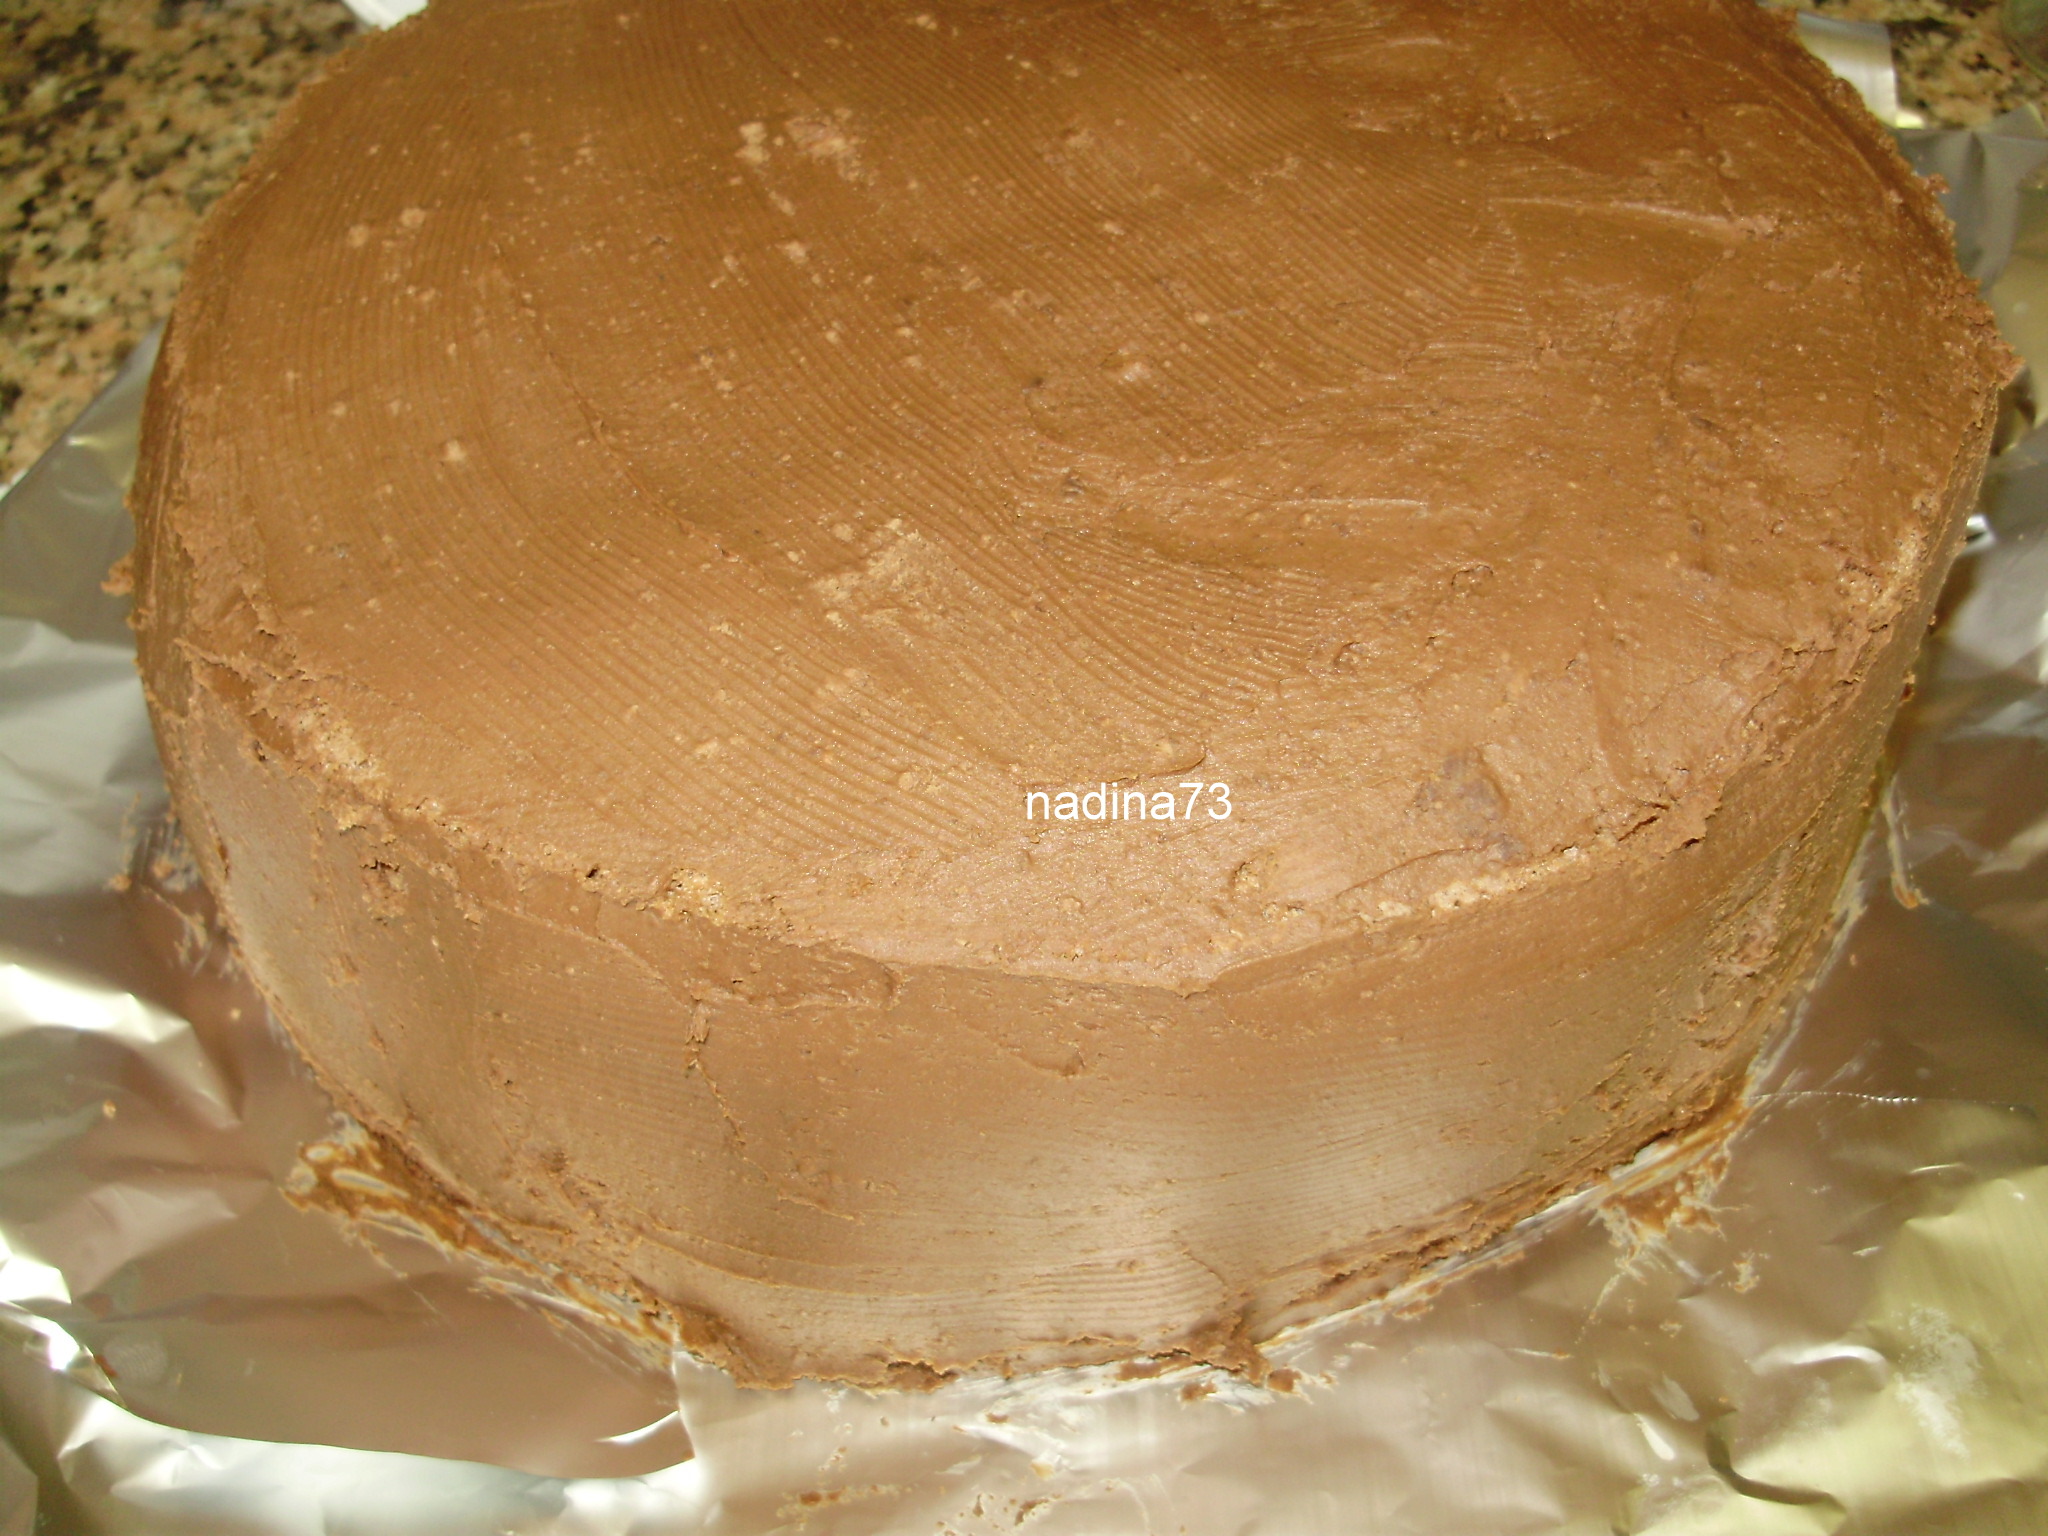 Tort cadou (de ciocolata)2